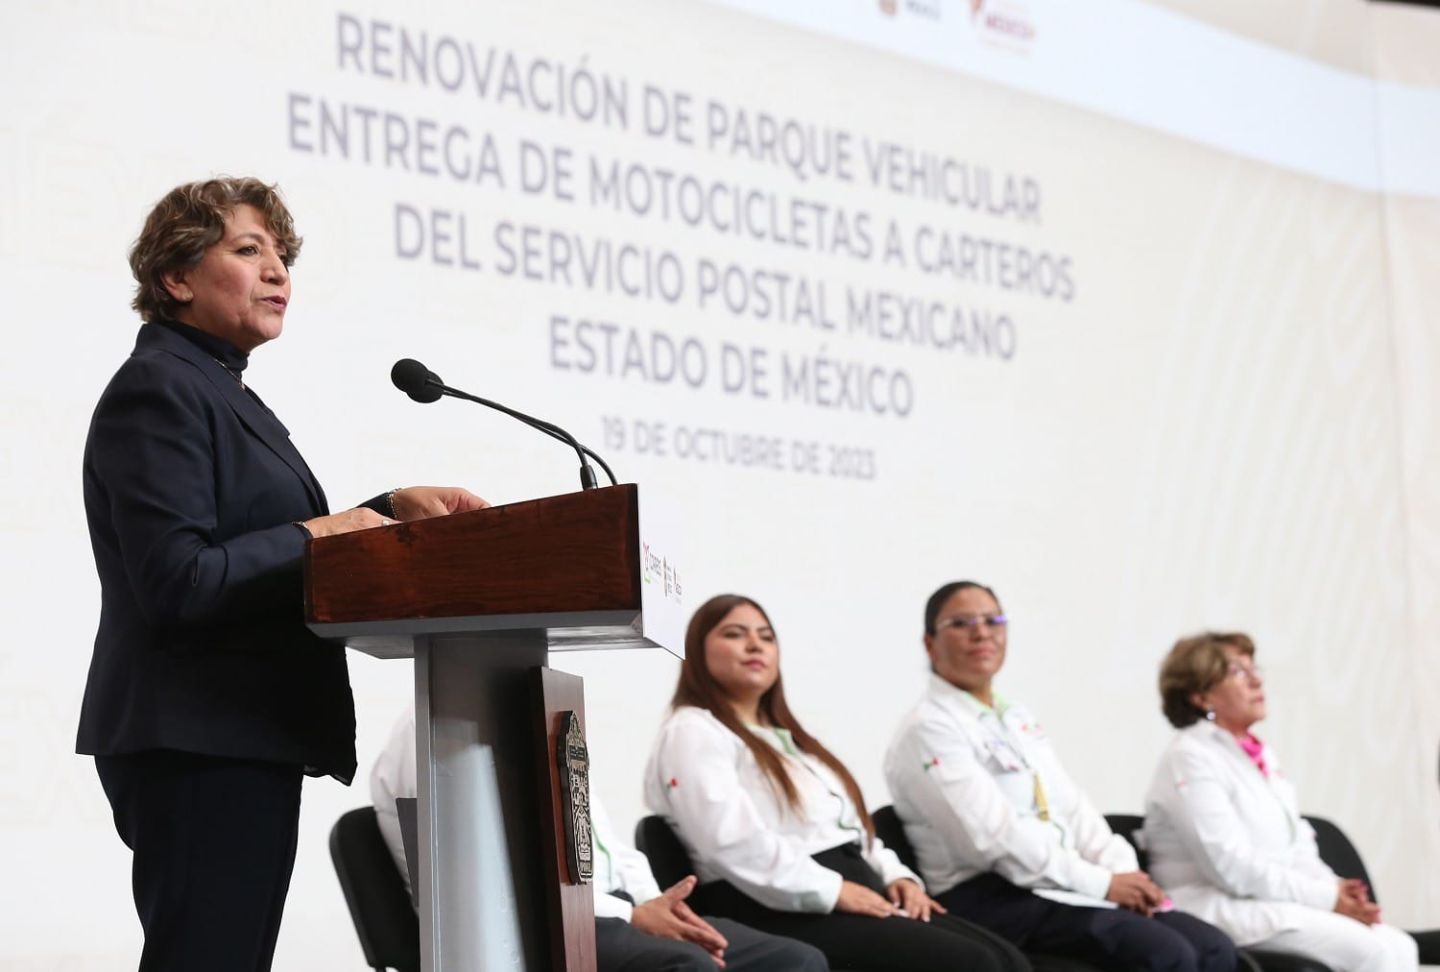 Mensaje de la Gobernadora Constitucional del Estado de México, Mtra. Delfina Gómez Alvarez Durante la Ceremonia de Renovación de Parque Vehicular 36ª
